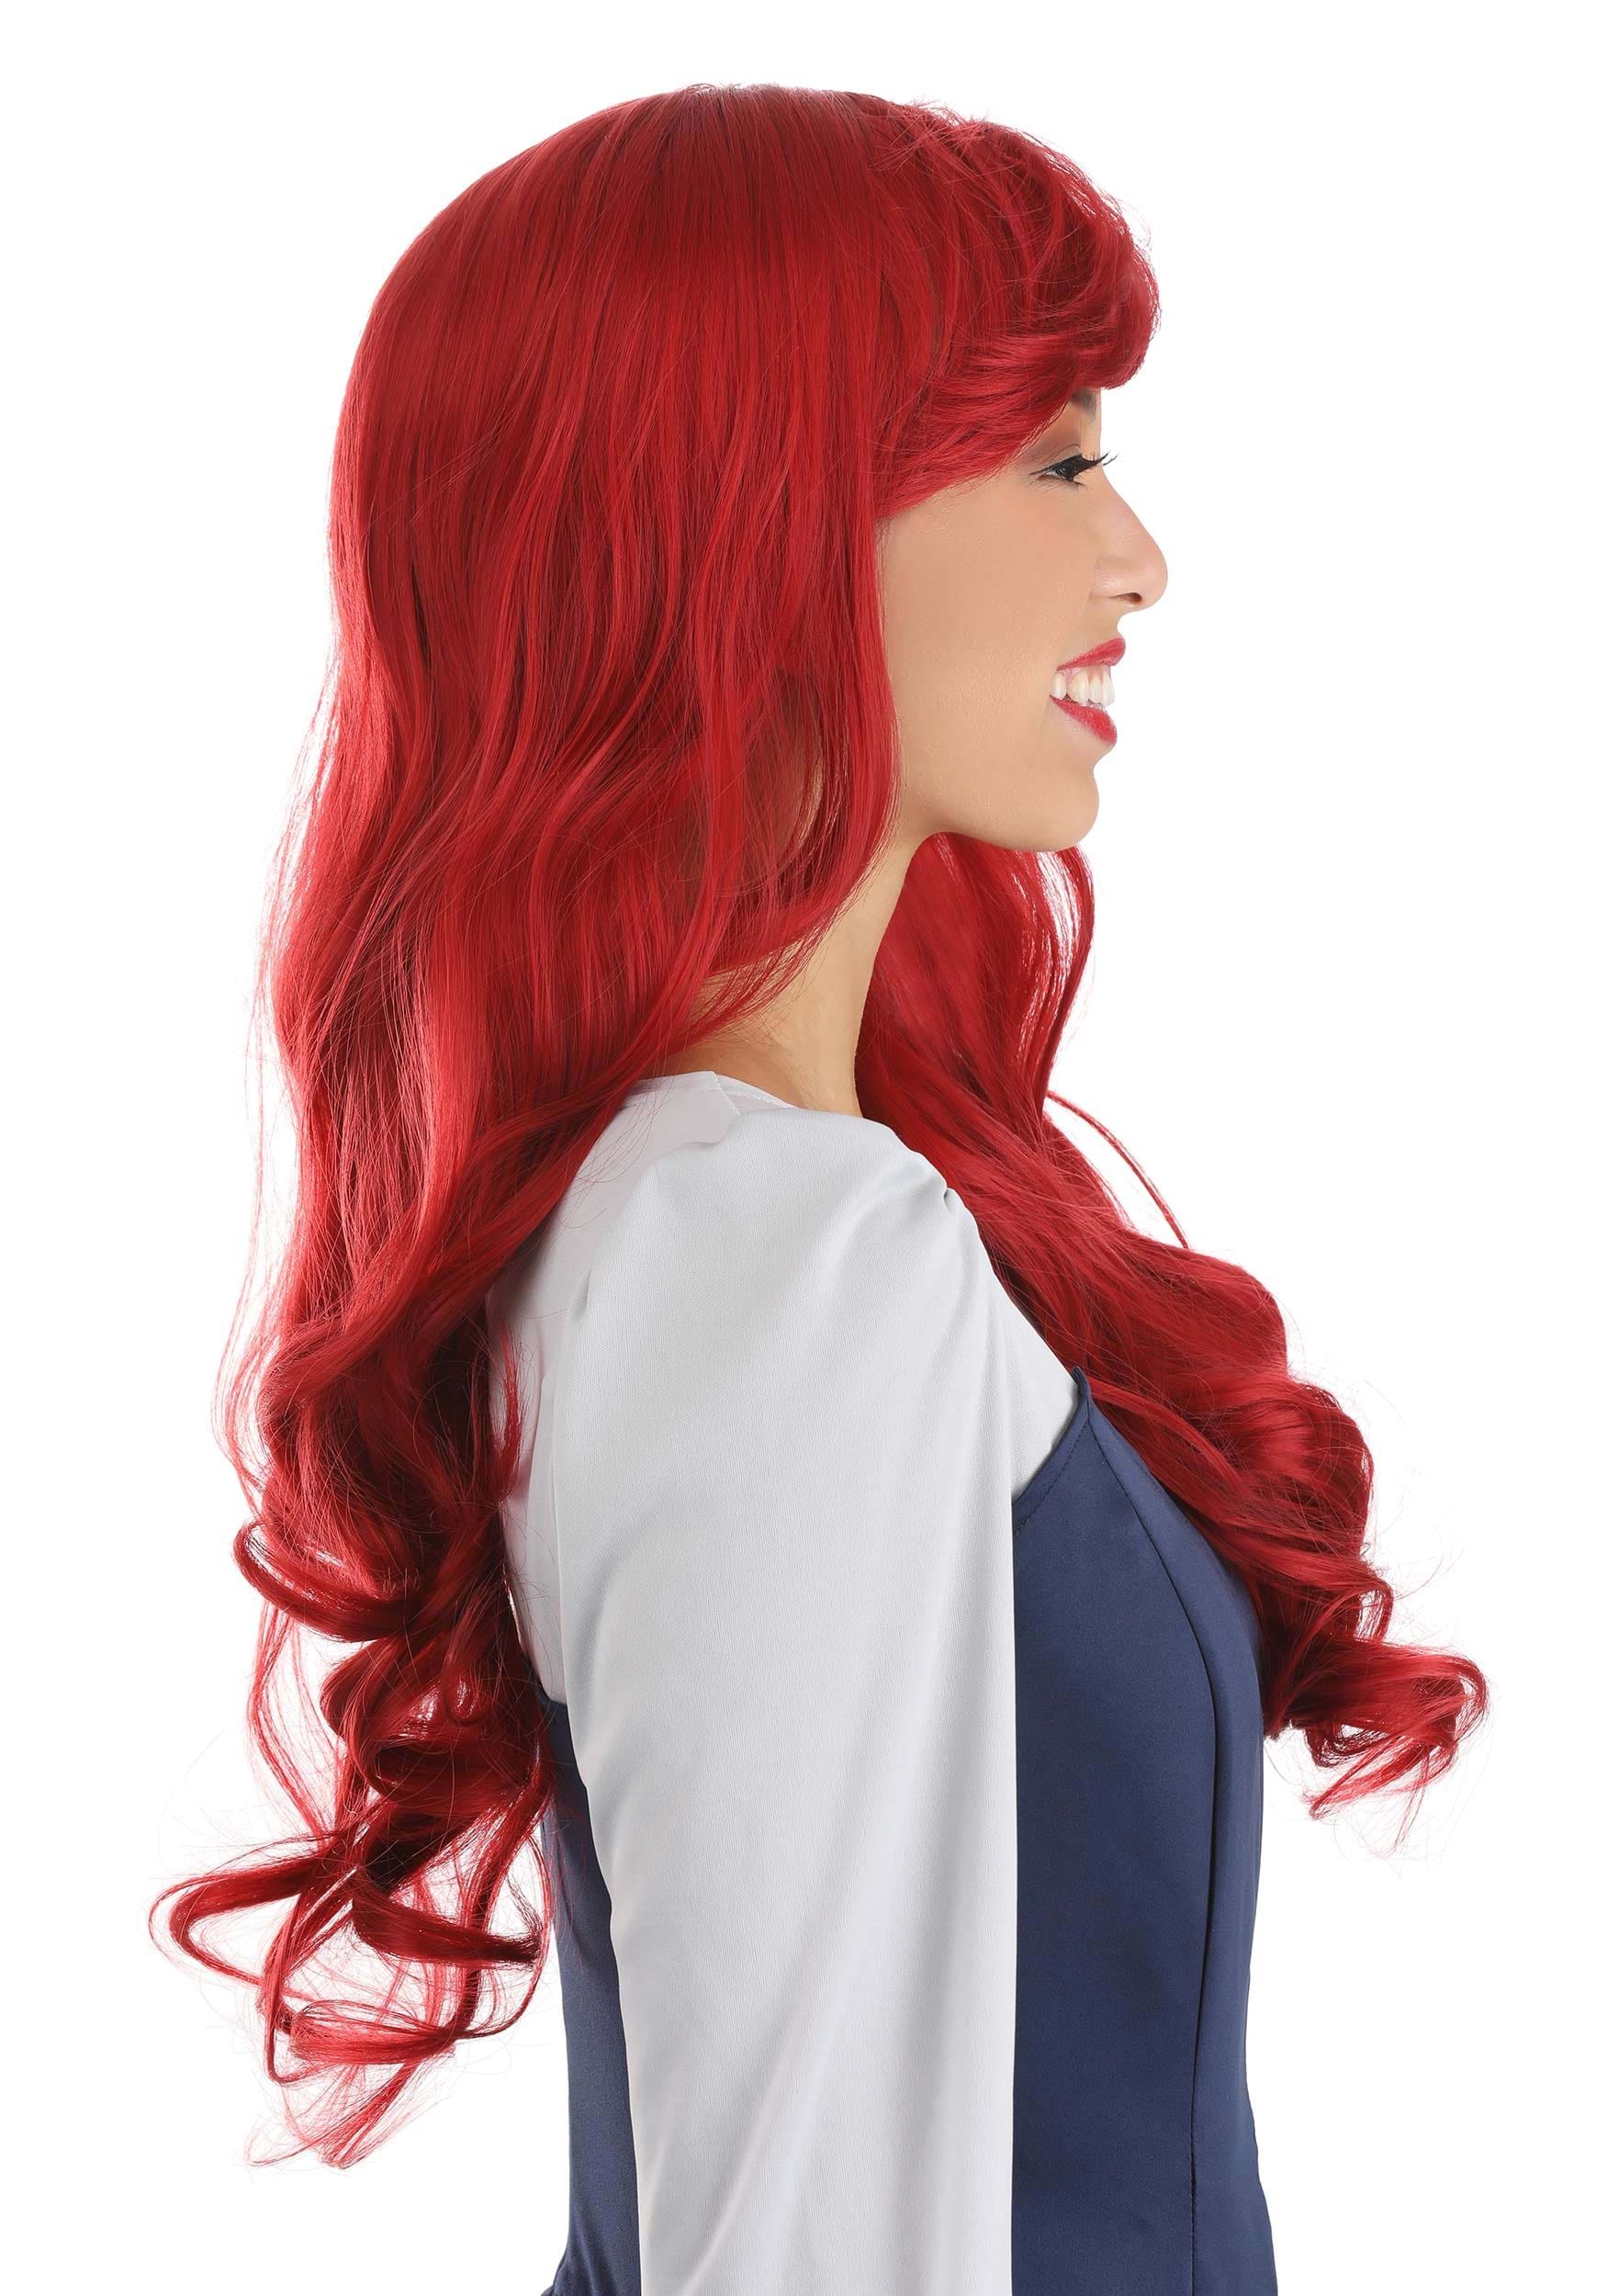 The Little Mermaid Women's Ariel Wig